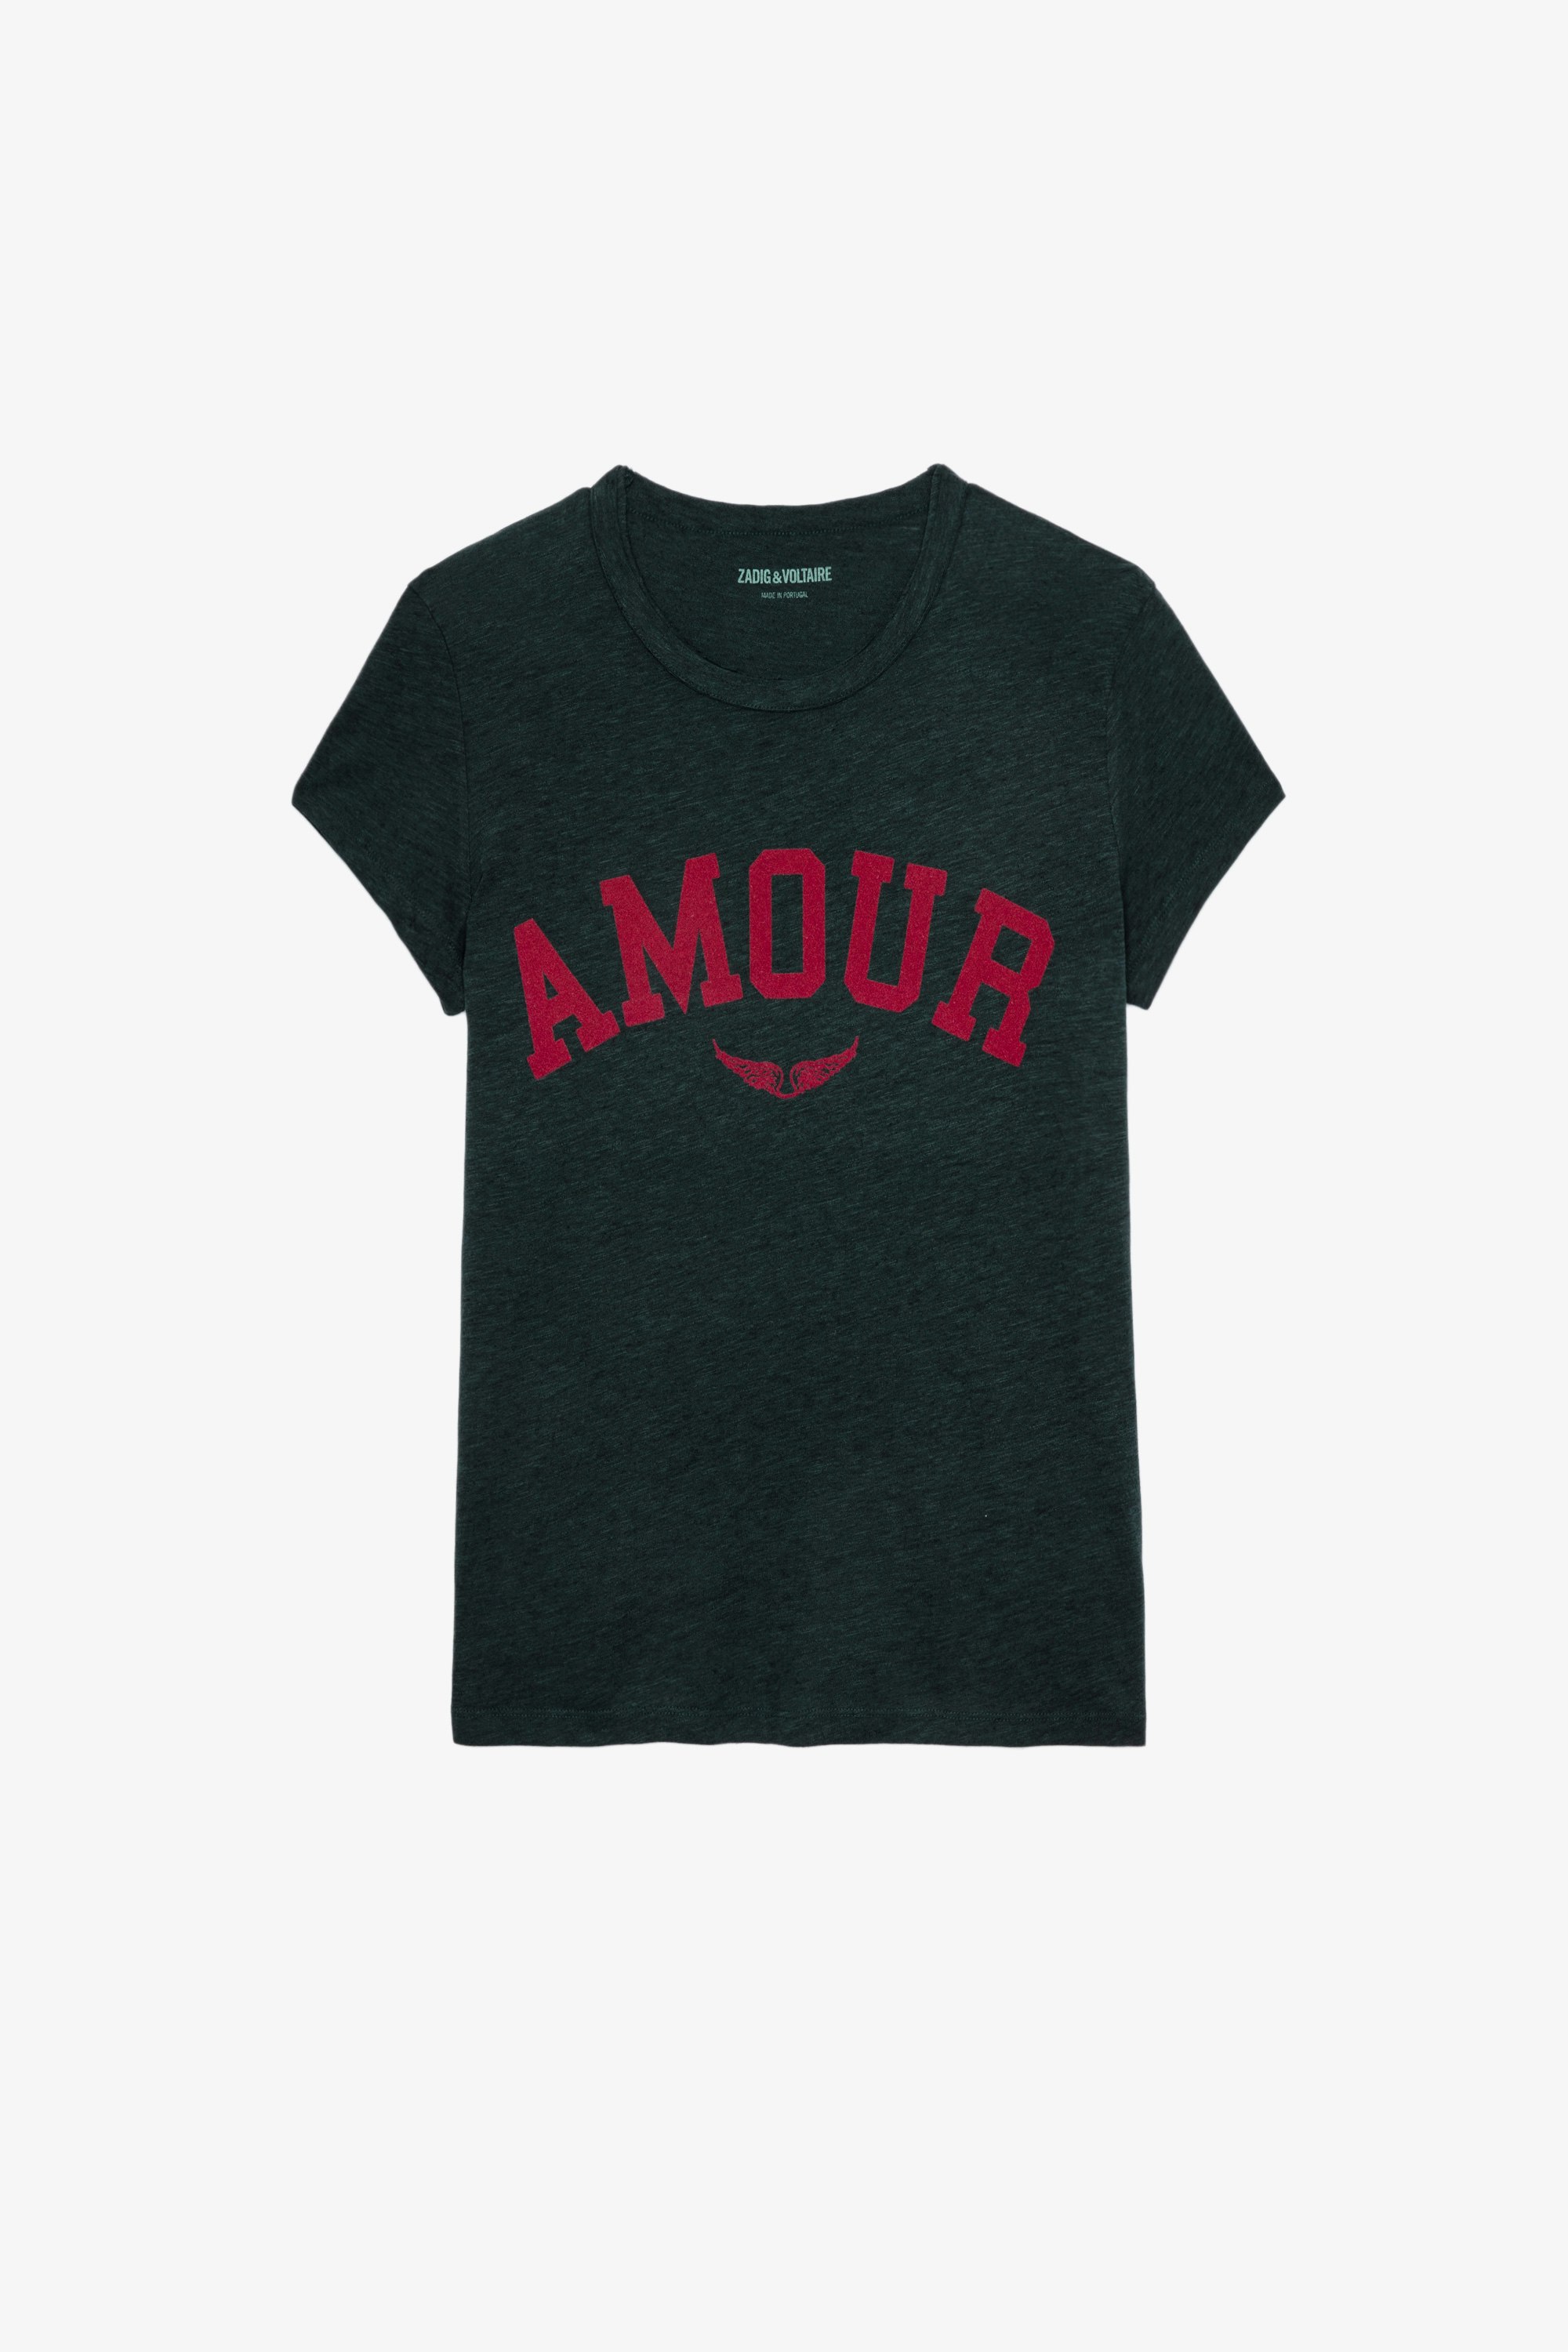 T-Shirt Walk Amour Grünes Damen-T-Shirt mit Rundhalsausschnitt und kurzen Ärmeln mit Amour